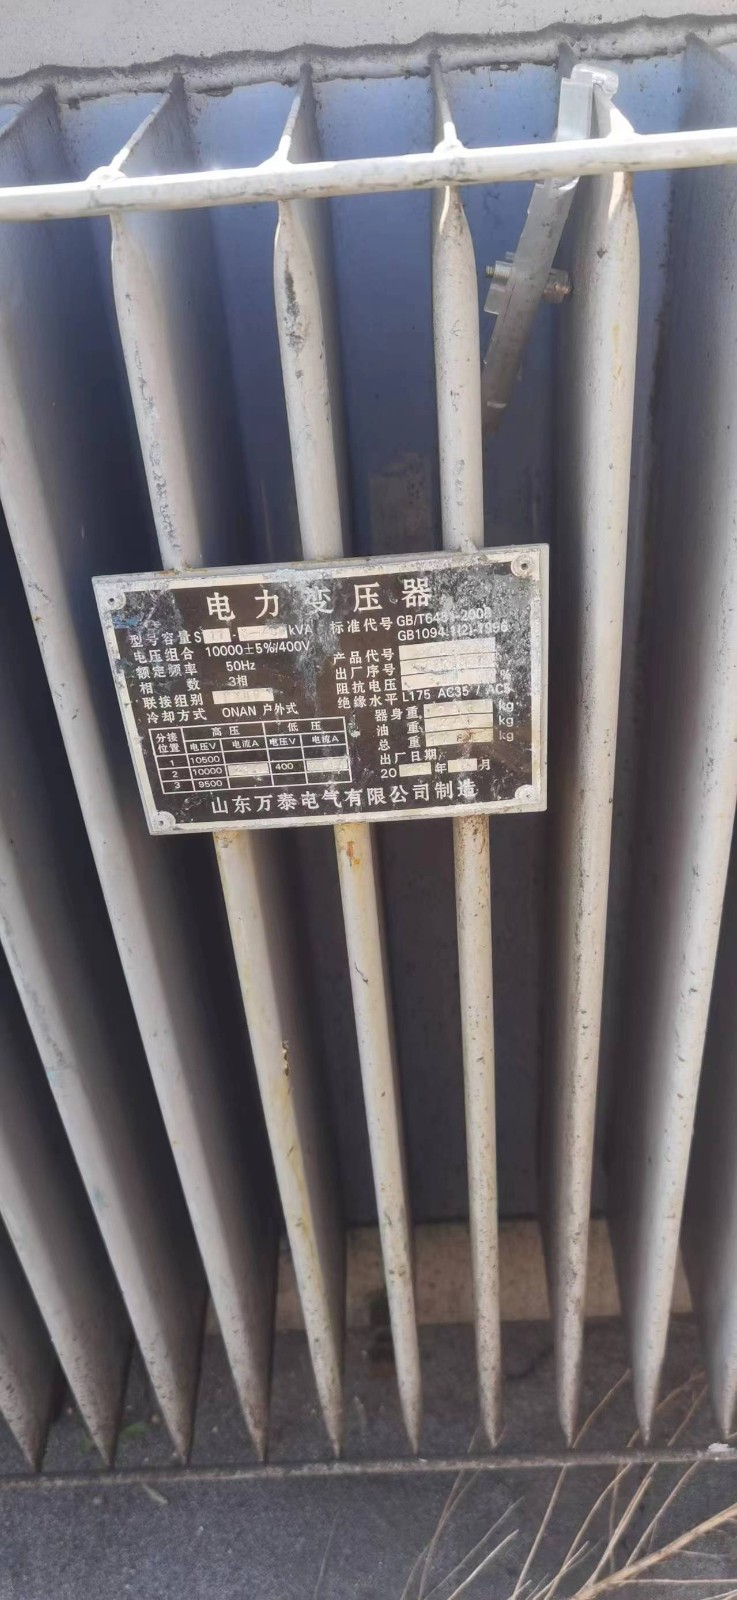 山东省青岛市废旧变压器、空调和电机等网络拍卖公告